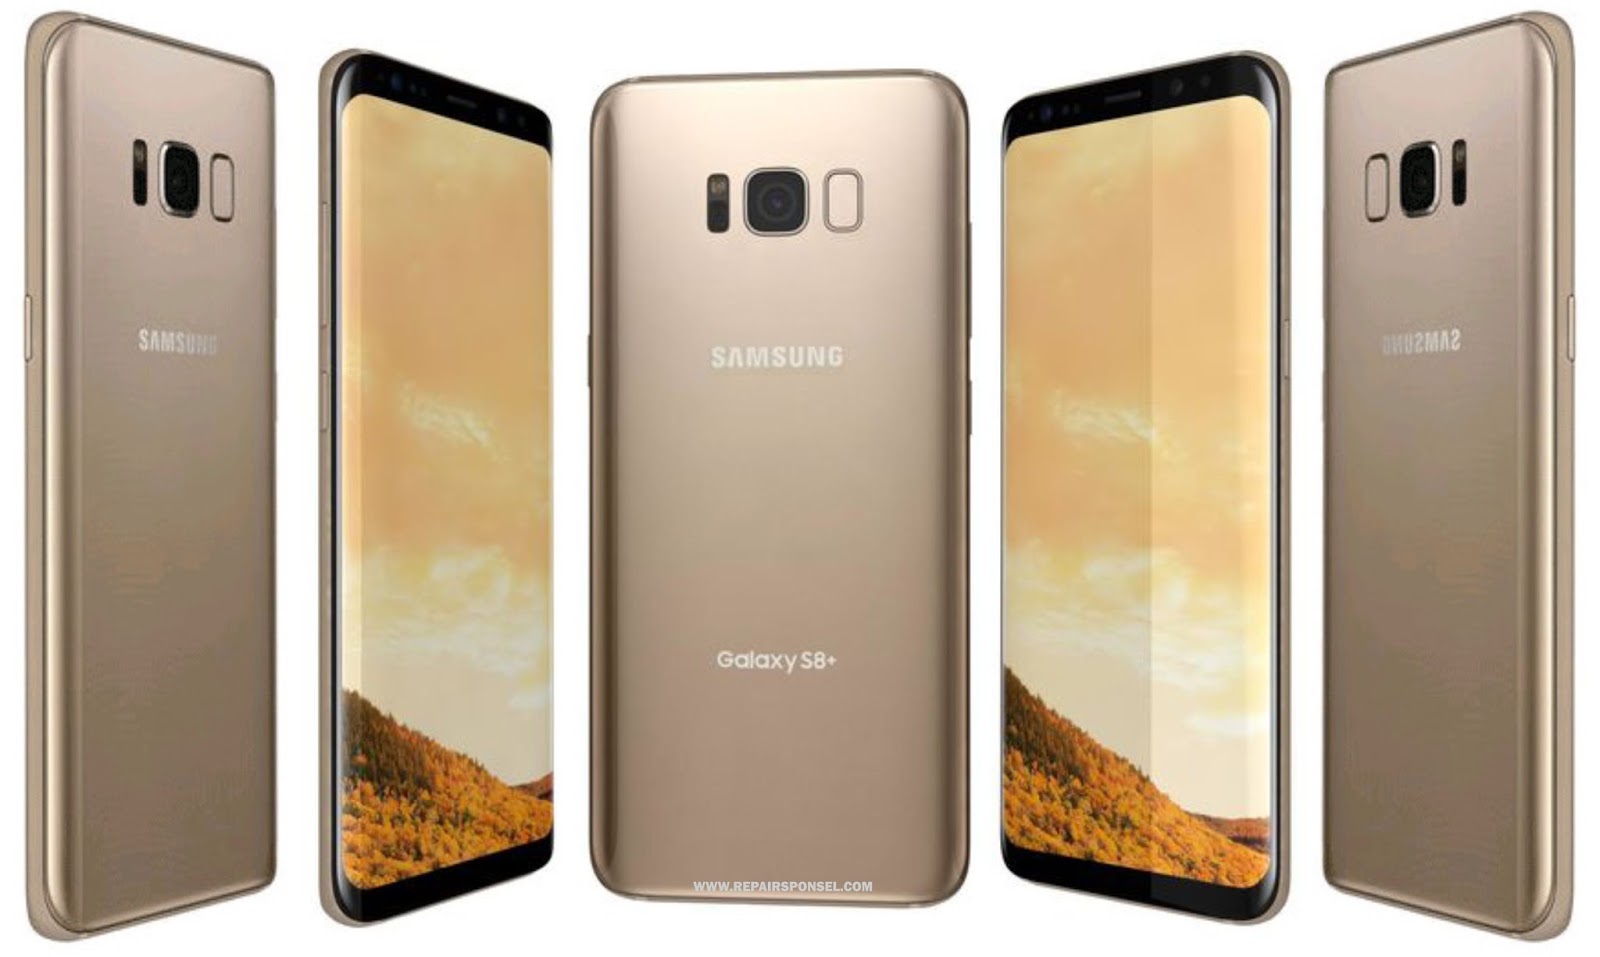 Harga Samsung Galaxy S8 dan Spesifikasi - Repairs Ponsel